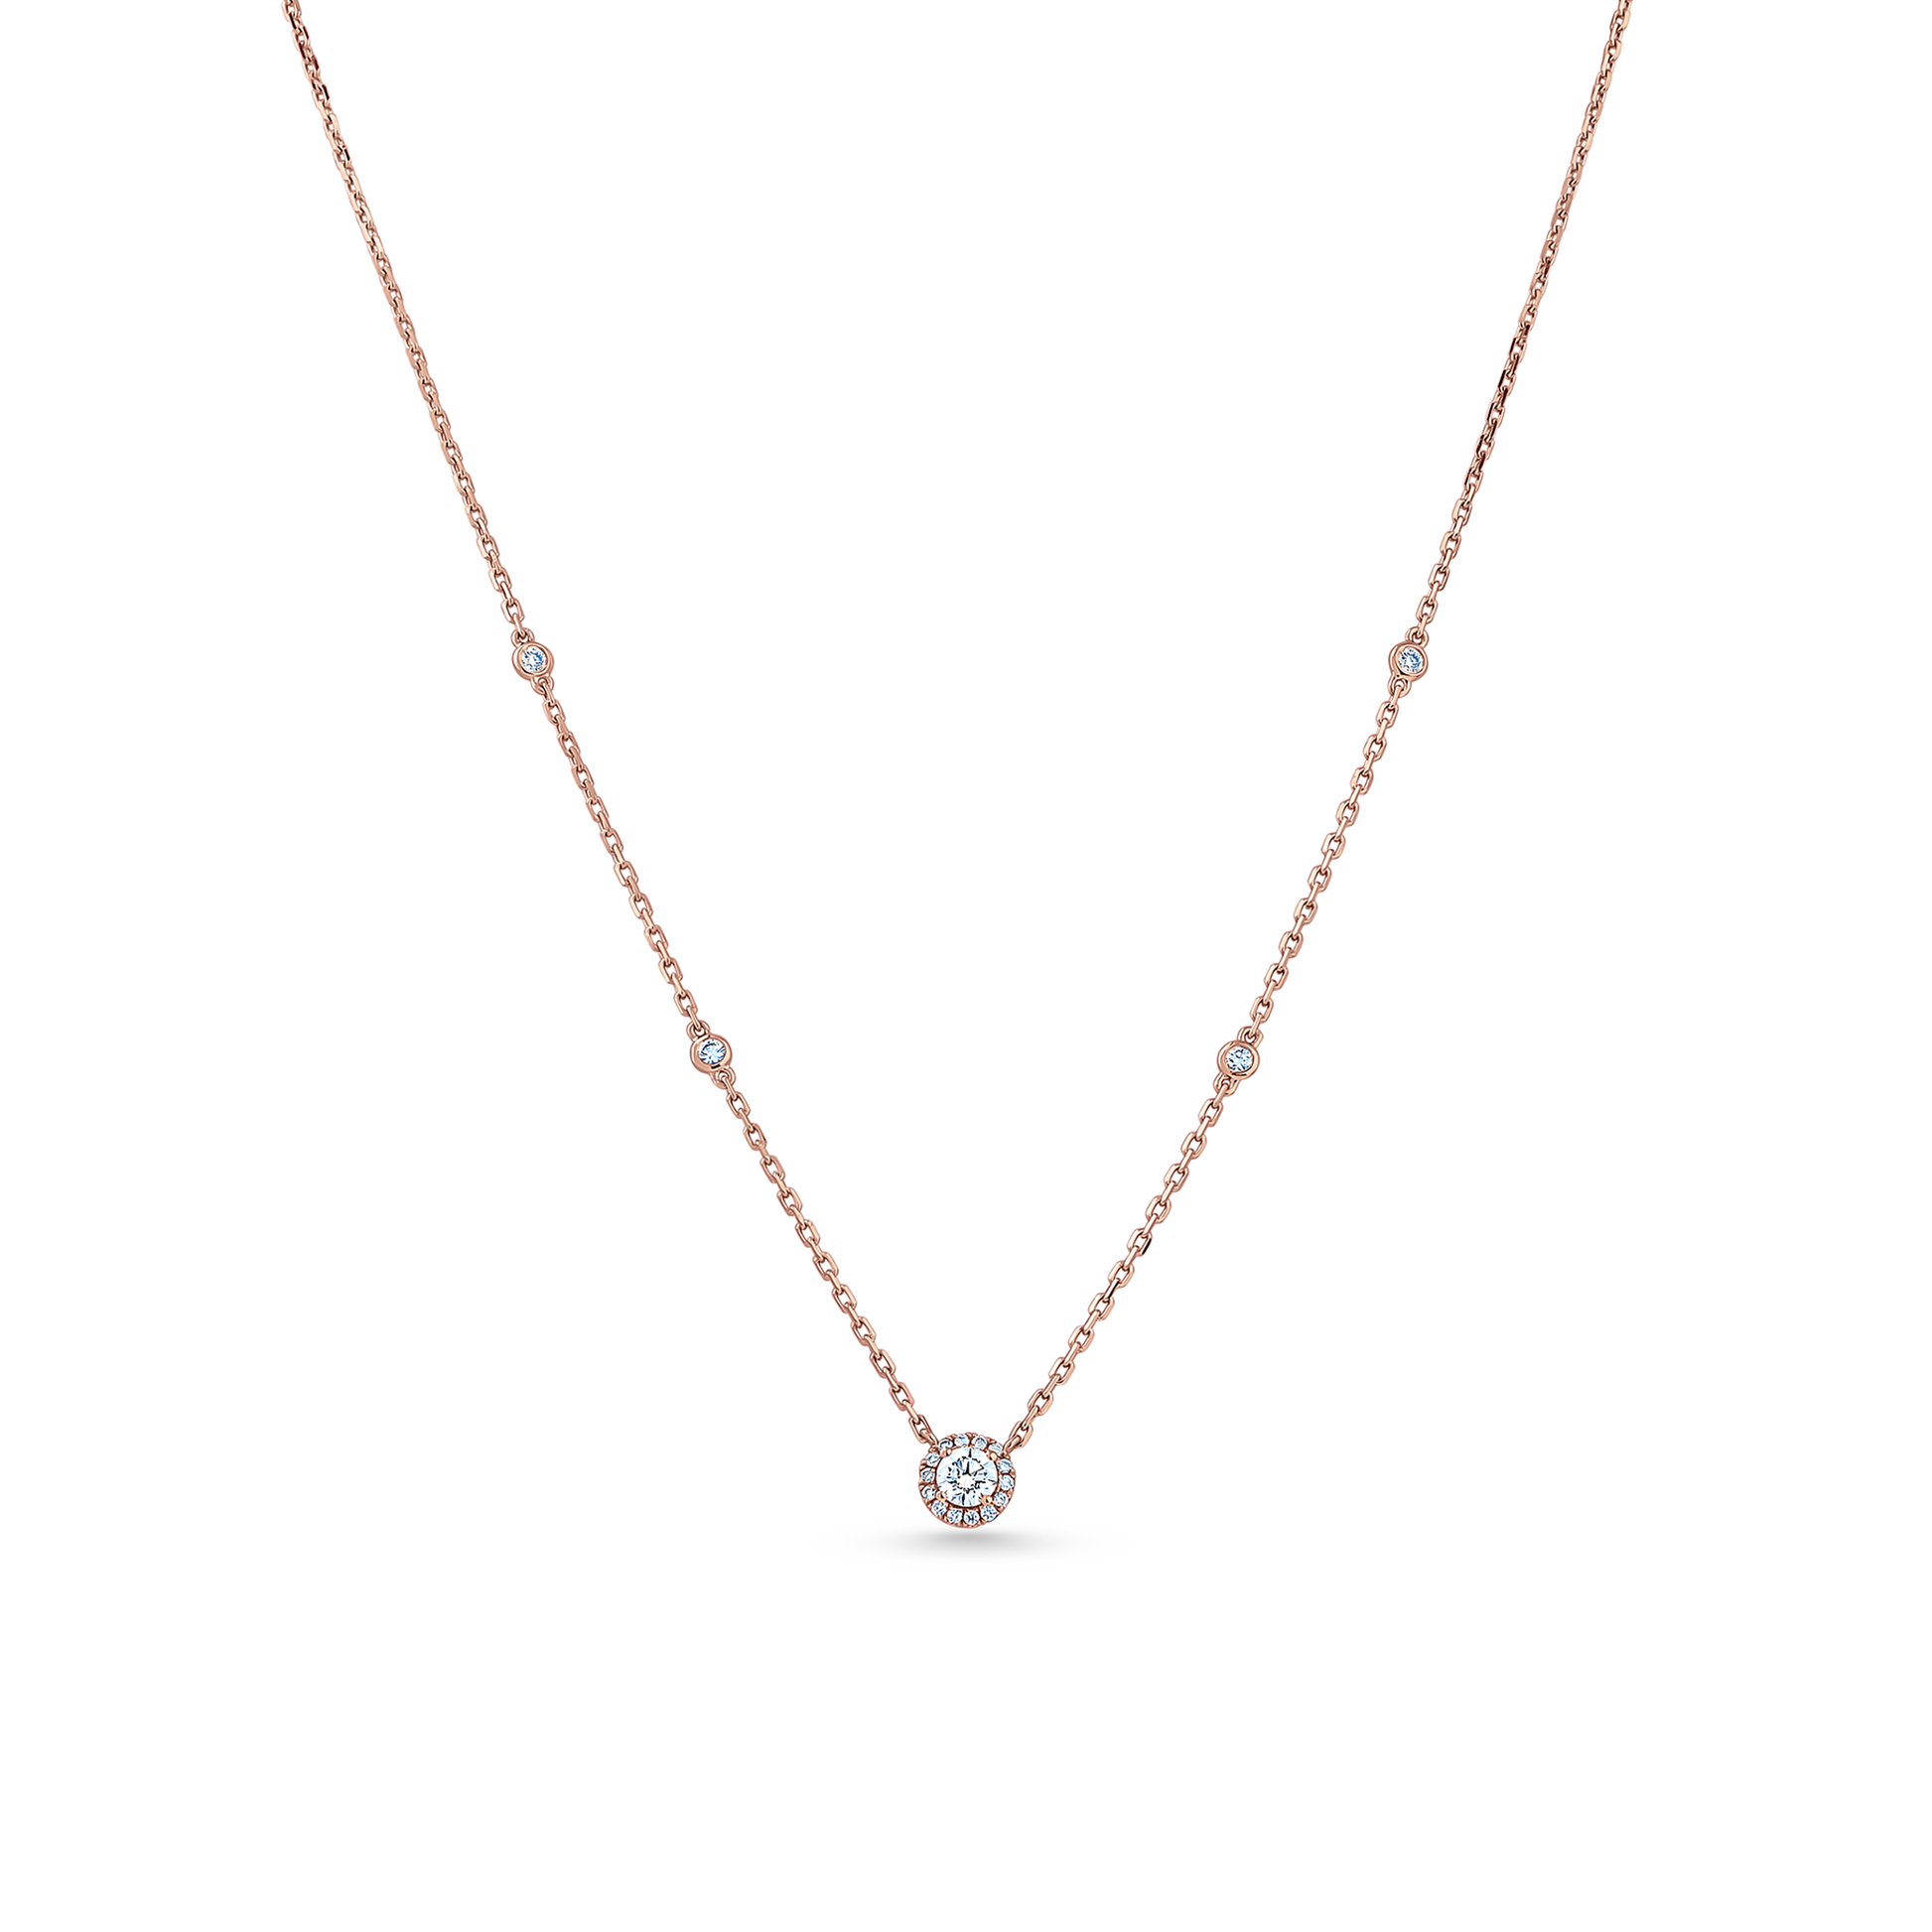 Oliver Heemeyer Liz diamond necklace 0.36 ct. made of 18k rose gold.